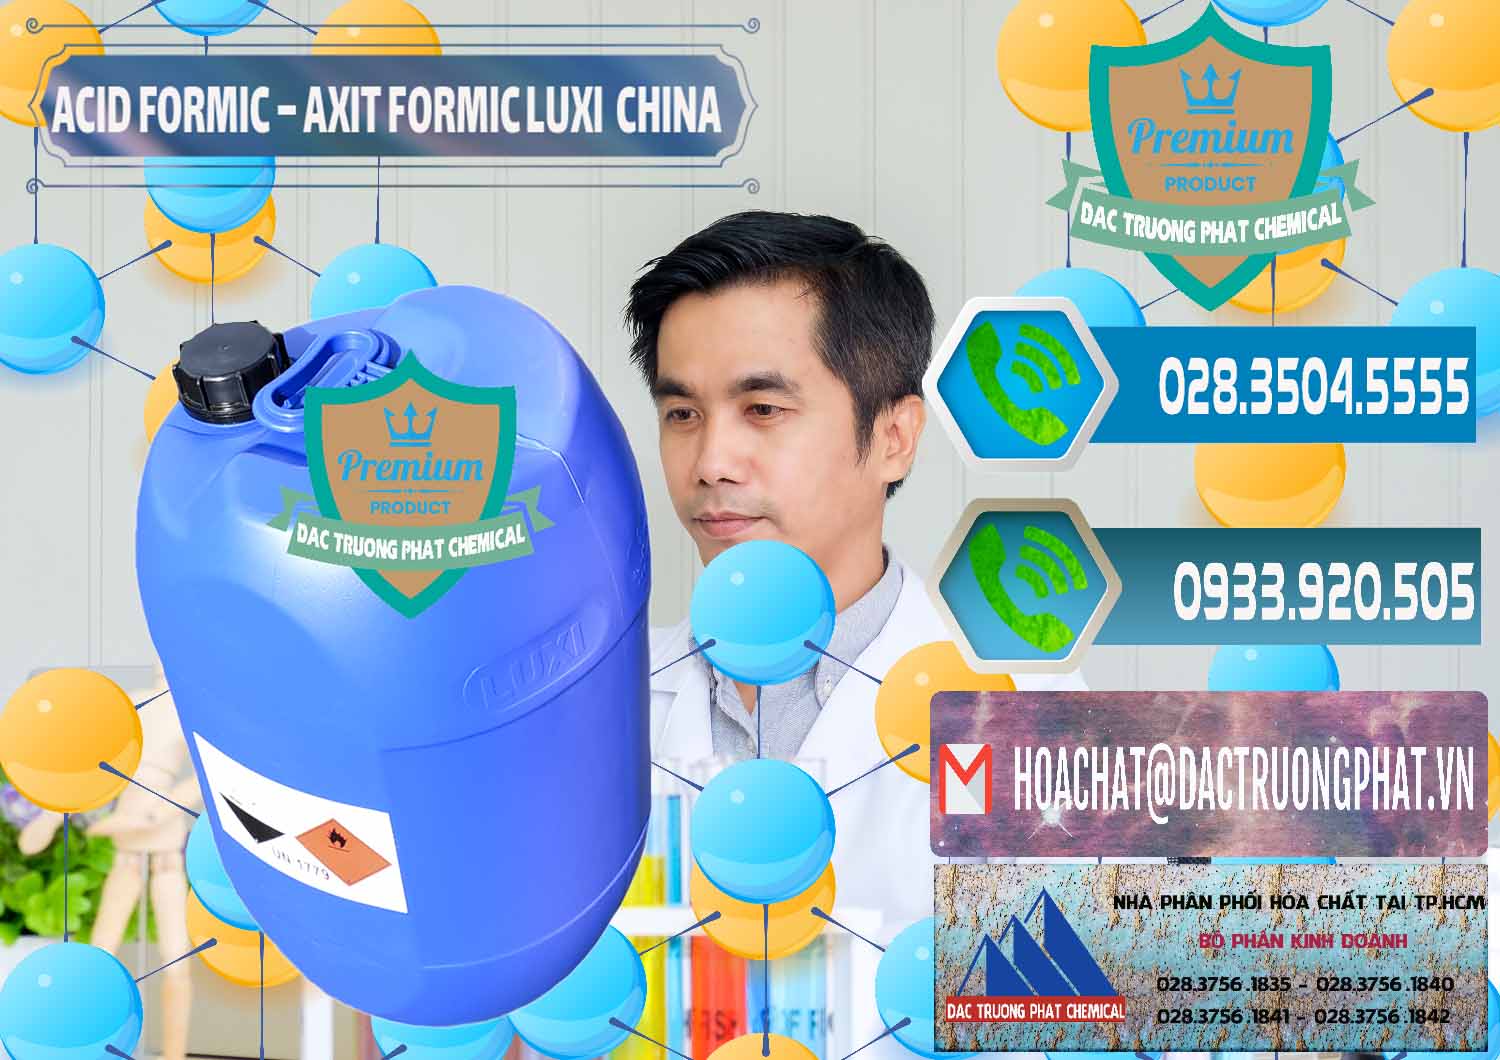 Cty chuyên kinh doanh & bán Acid Formic - Axit Formic Luxi Trung Quốc China - 0029 - Chuyên bán và cung cấp hóa chất tại TP.HCM - congtyhoachat.net